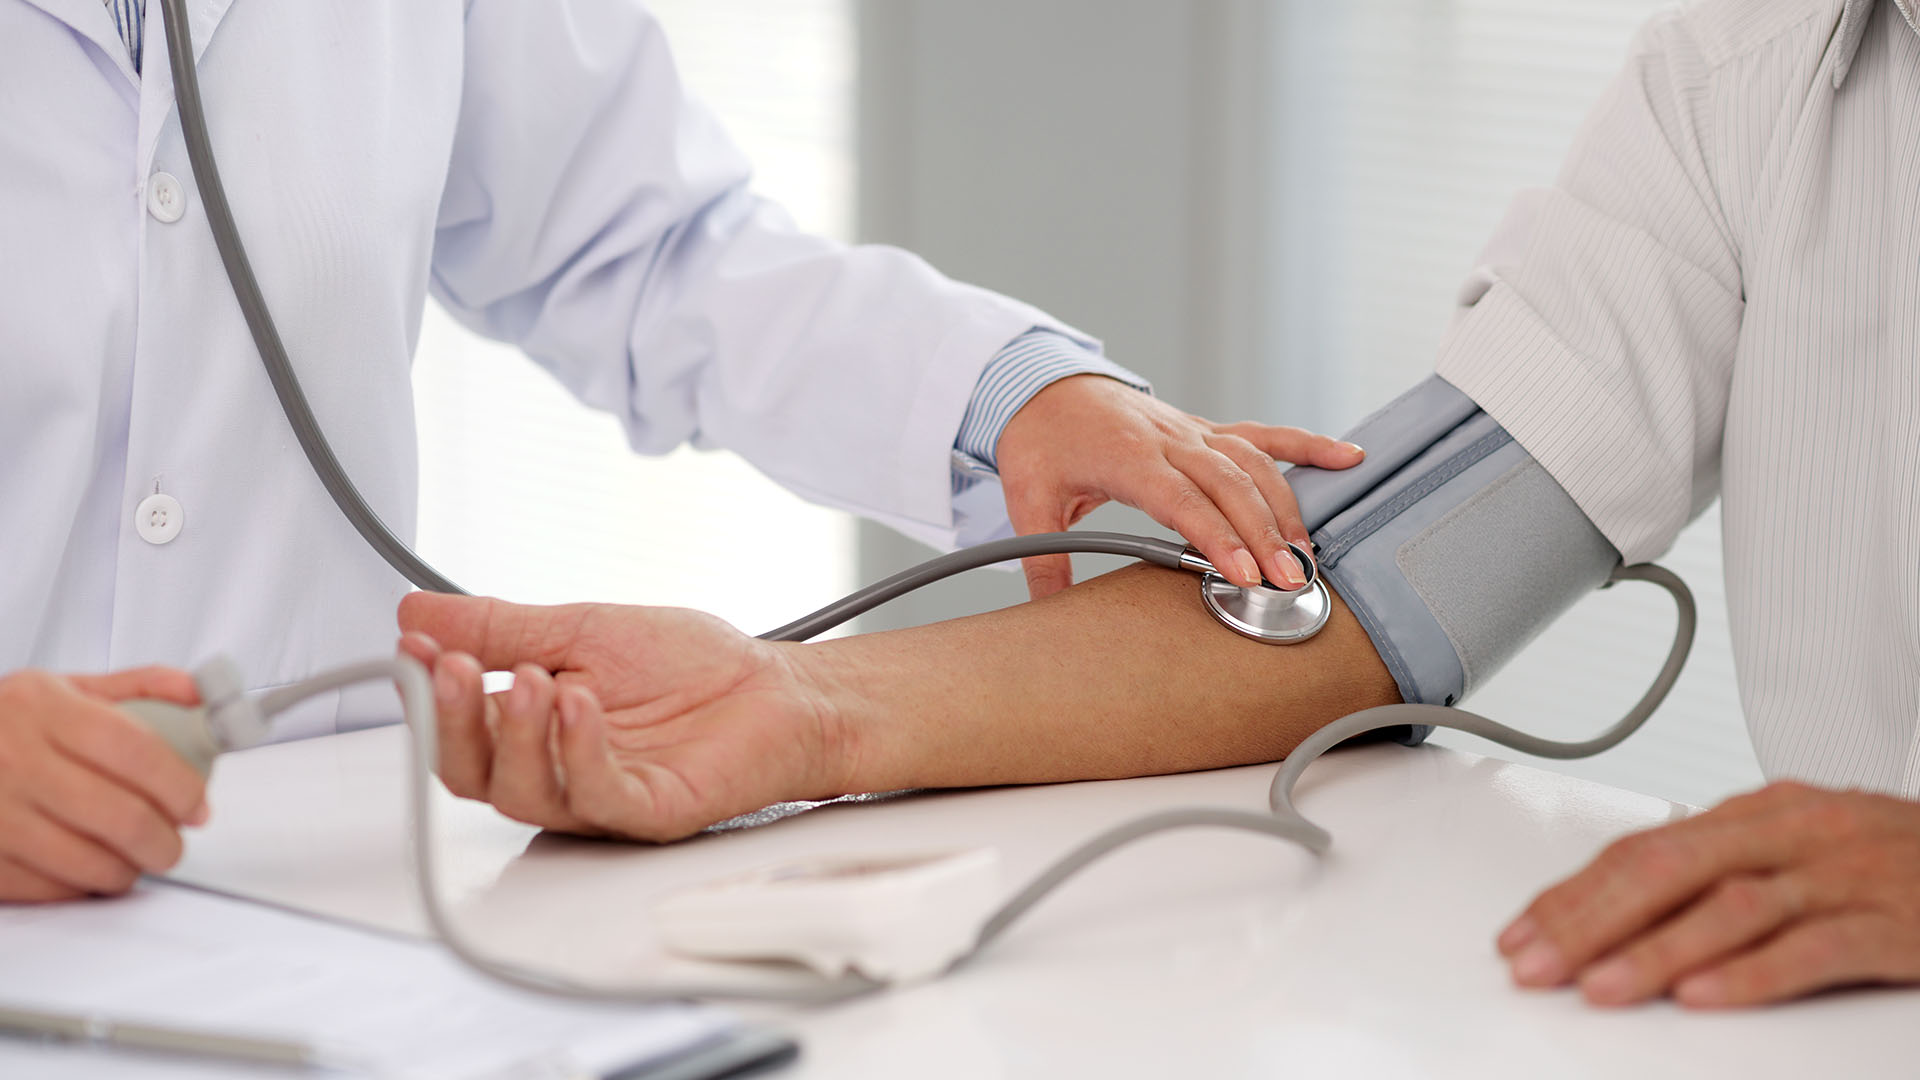 Medirse la presión arterial es clave porque puede estar alterada y no dar síntomas (Getty)